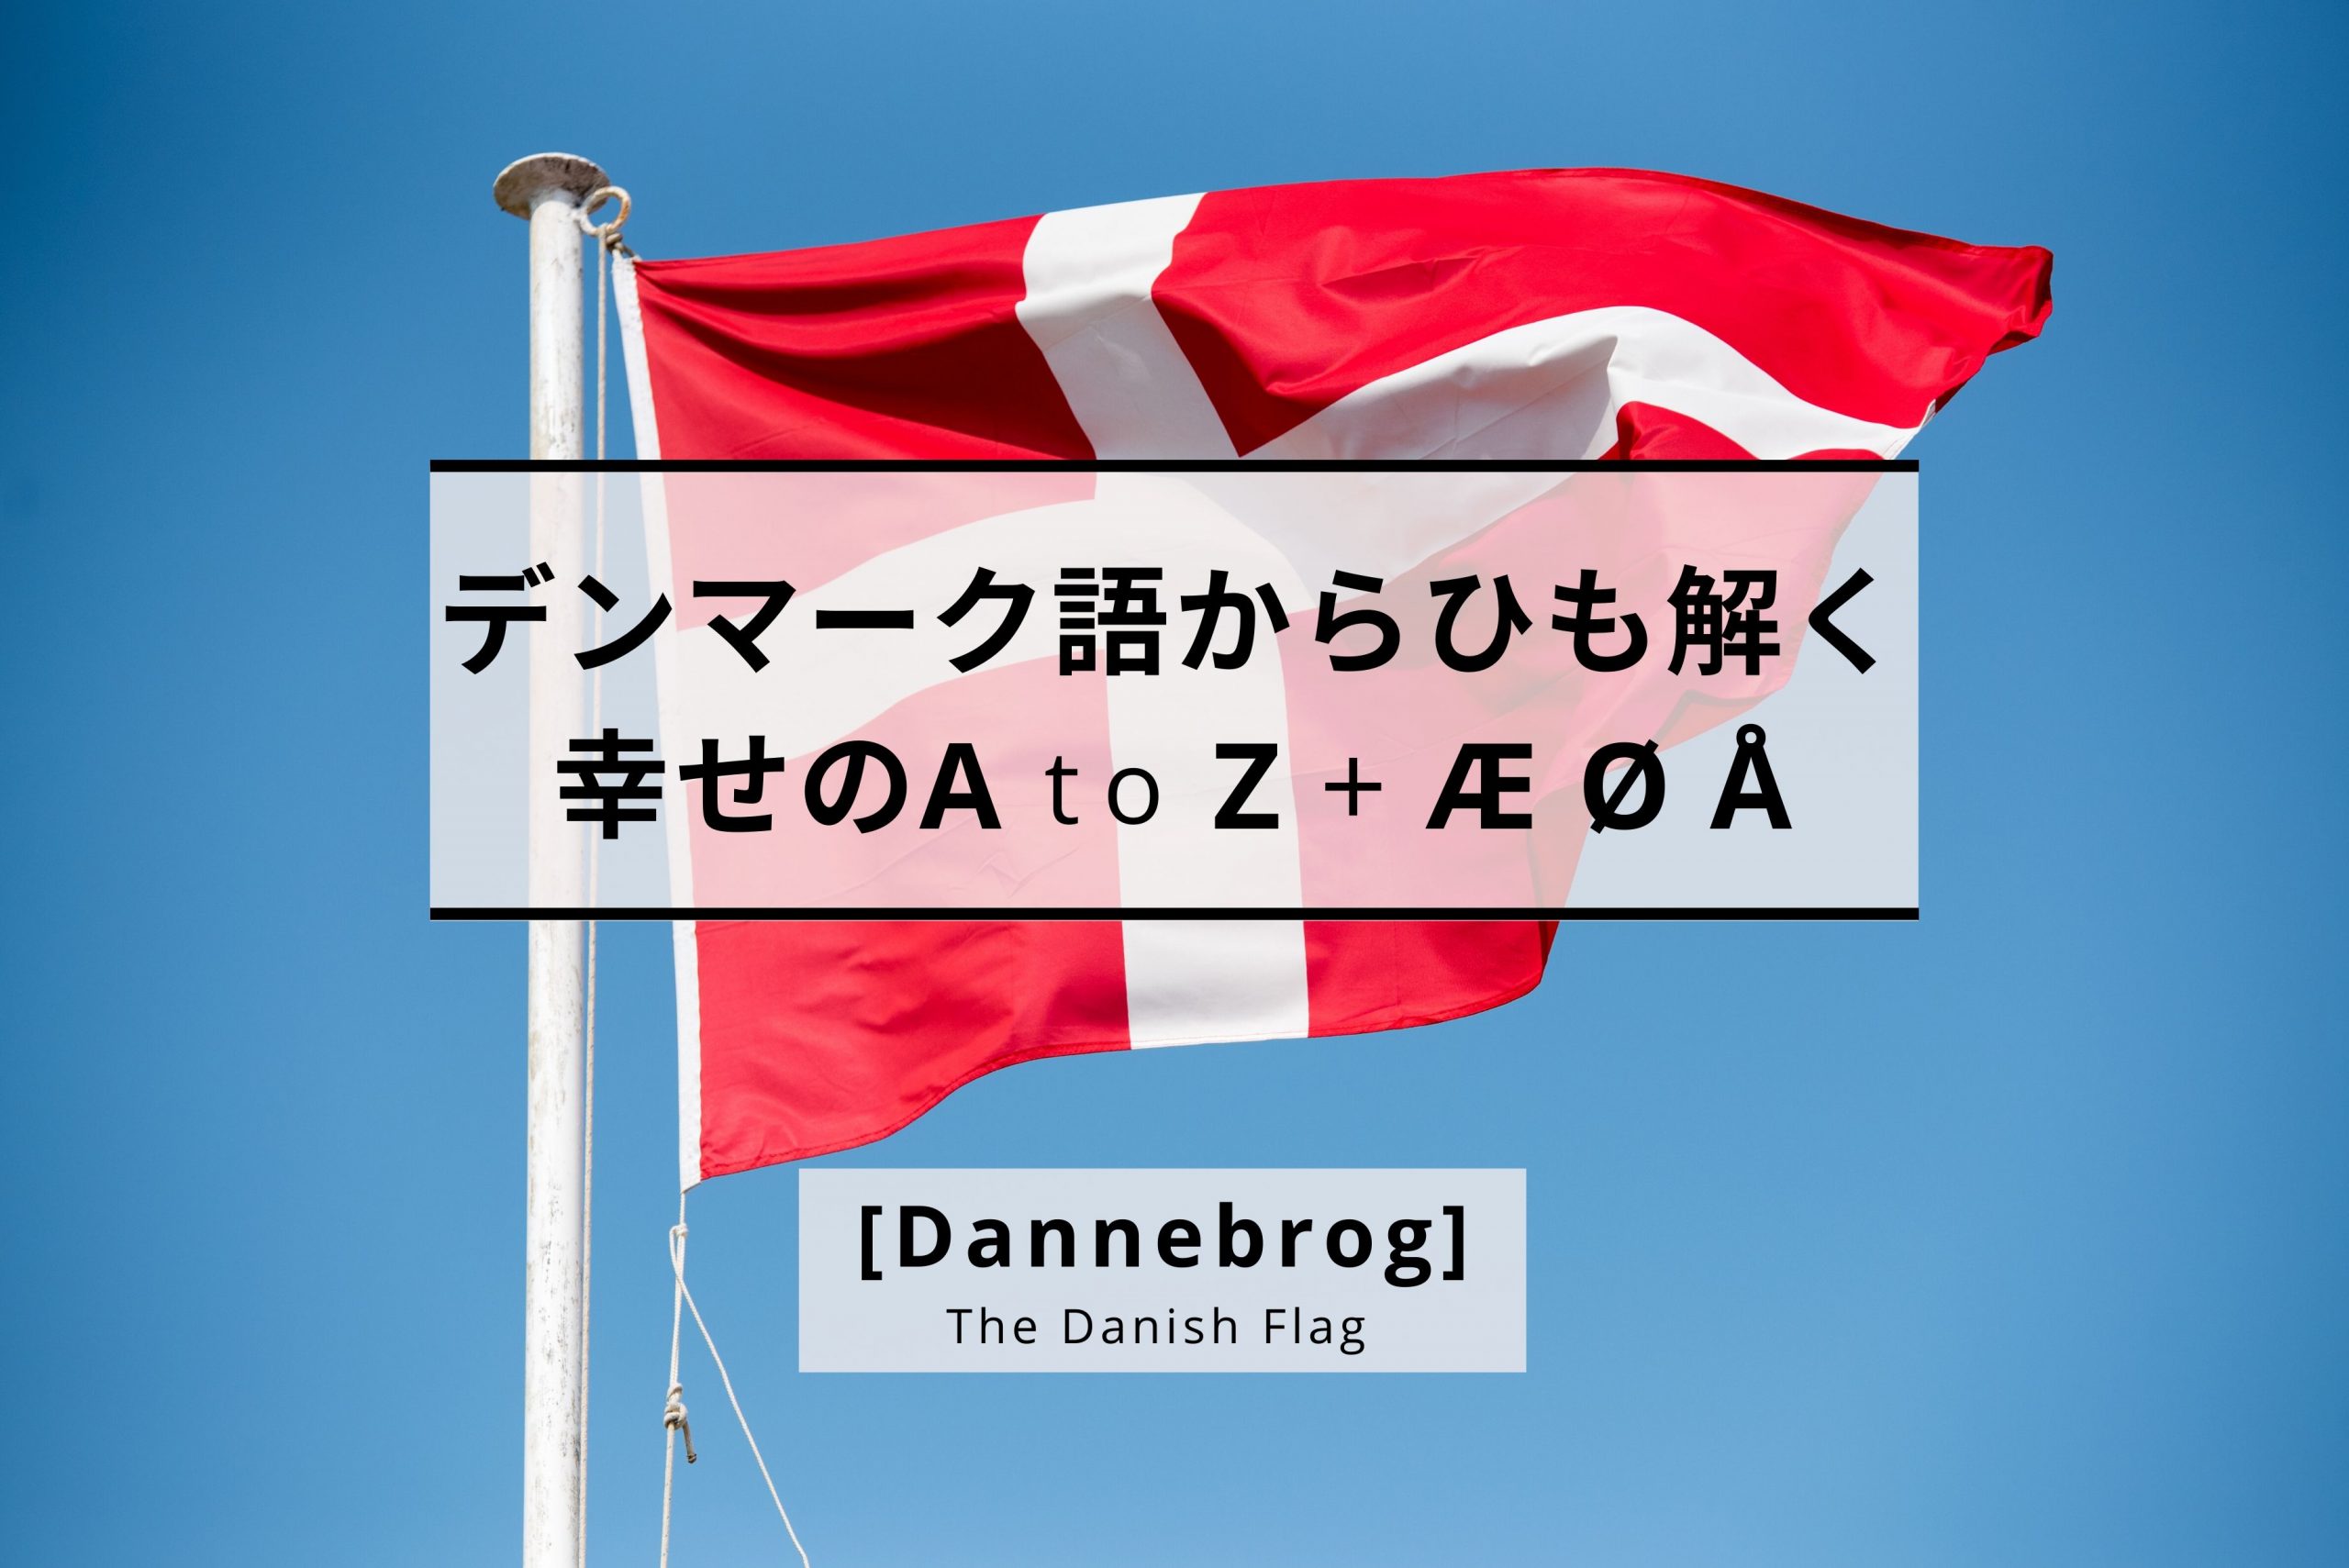 お祝いの席には忘れずに！デンマーク人が国旗を愛する背景と、母国への愛情表現について考えた | greenz.jp グリーンズ